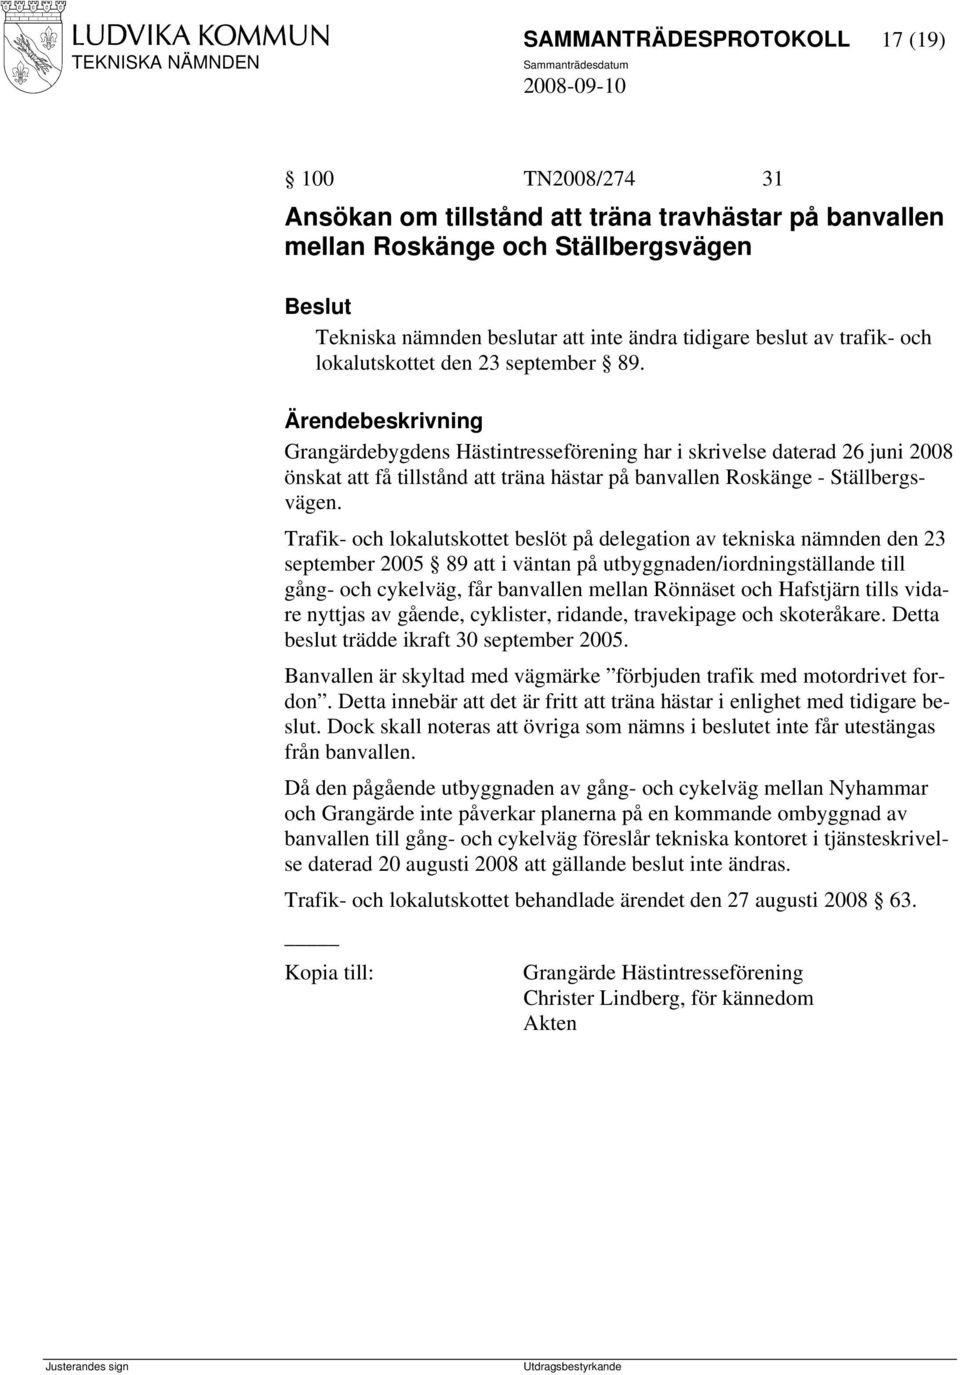 Grangärdebygdens Hästintresseförening har i skrivelse daterad 26 juni 2008 önskat att få tillstånd att träna hästar på banvallen Roskänge - Ställbergsvägen.